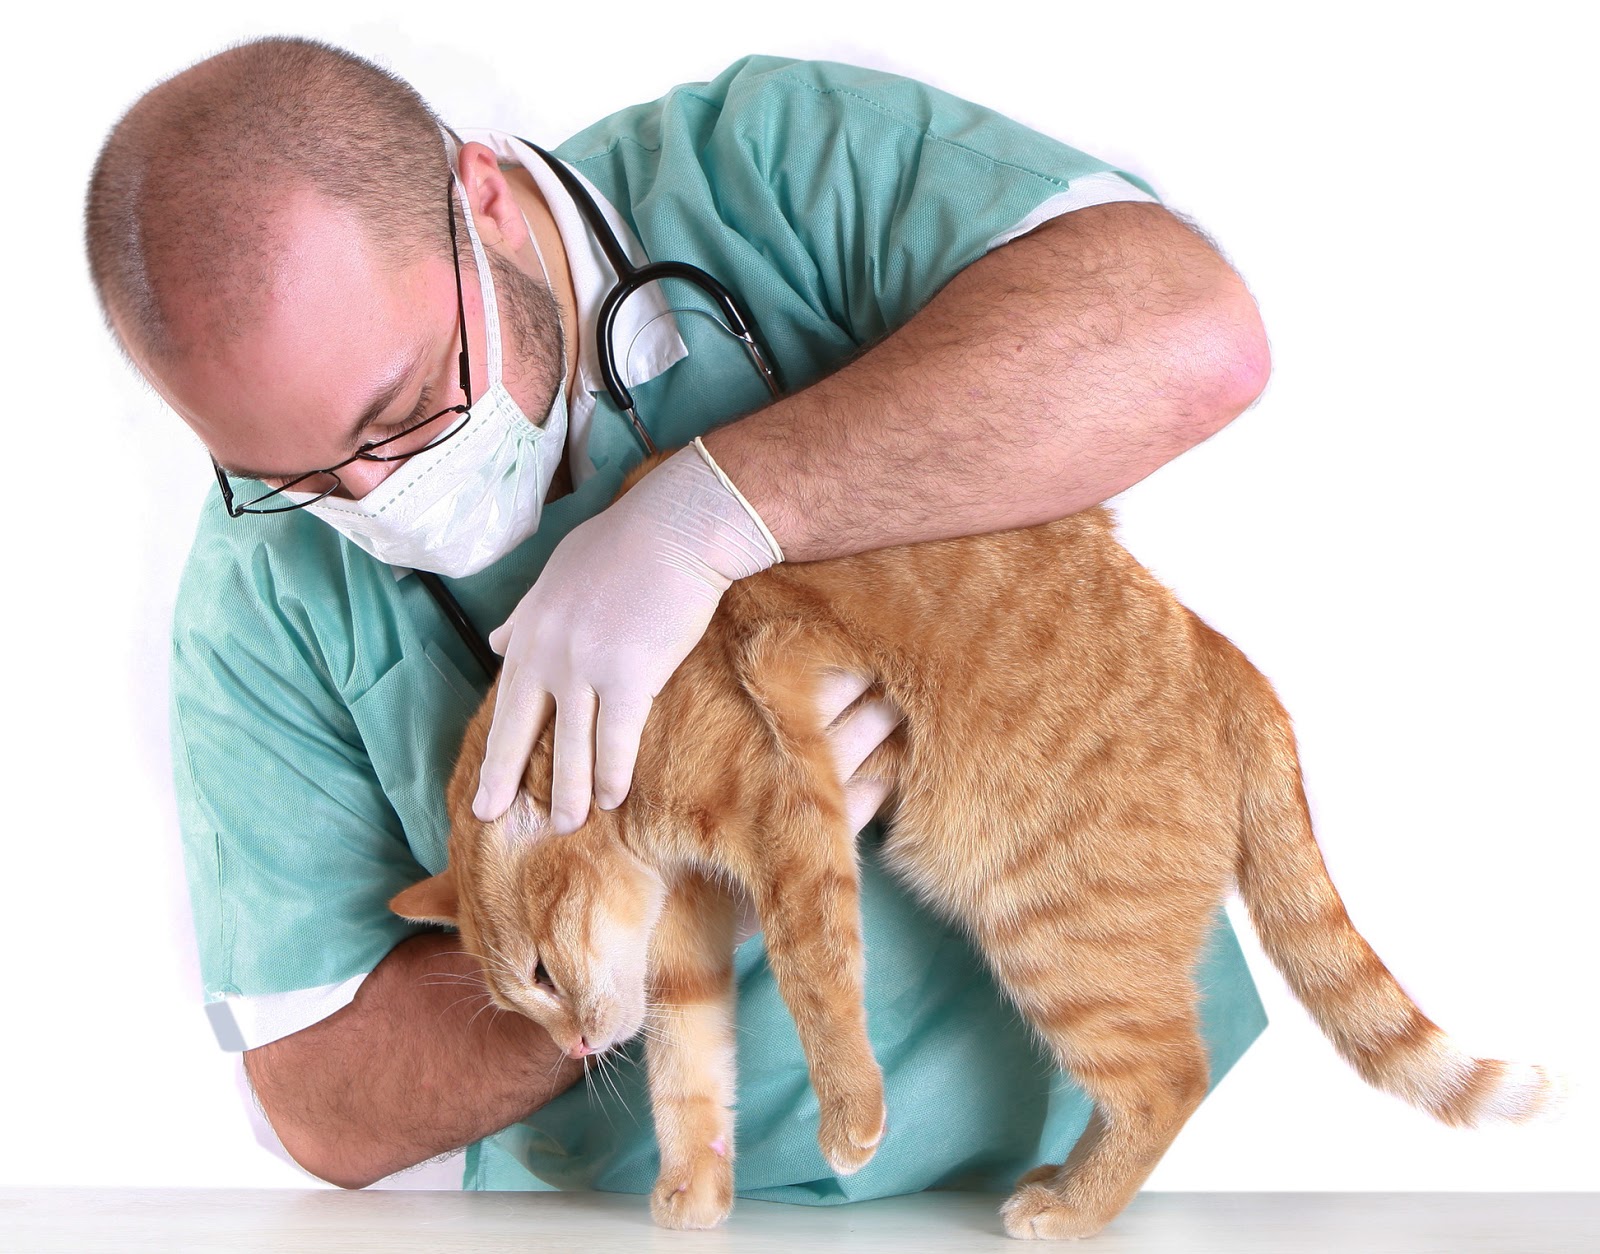 Mèo tiêu chảy sùi bọt mép - Dấu hiệu bệnh nguy hiểm & Cách xử lý kịp thời - Lifepet